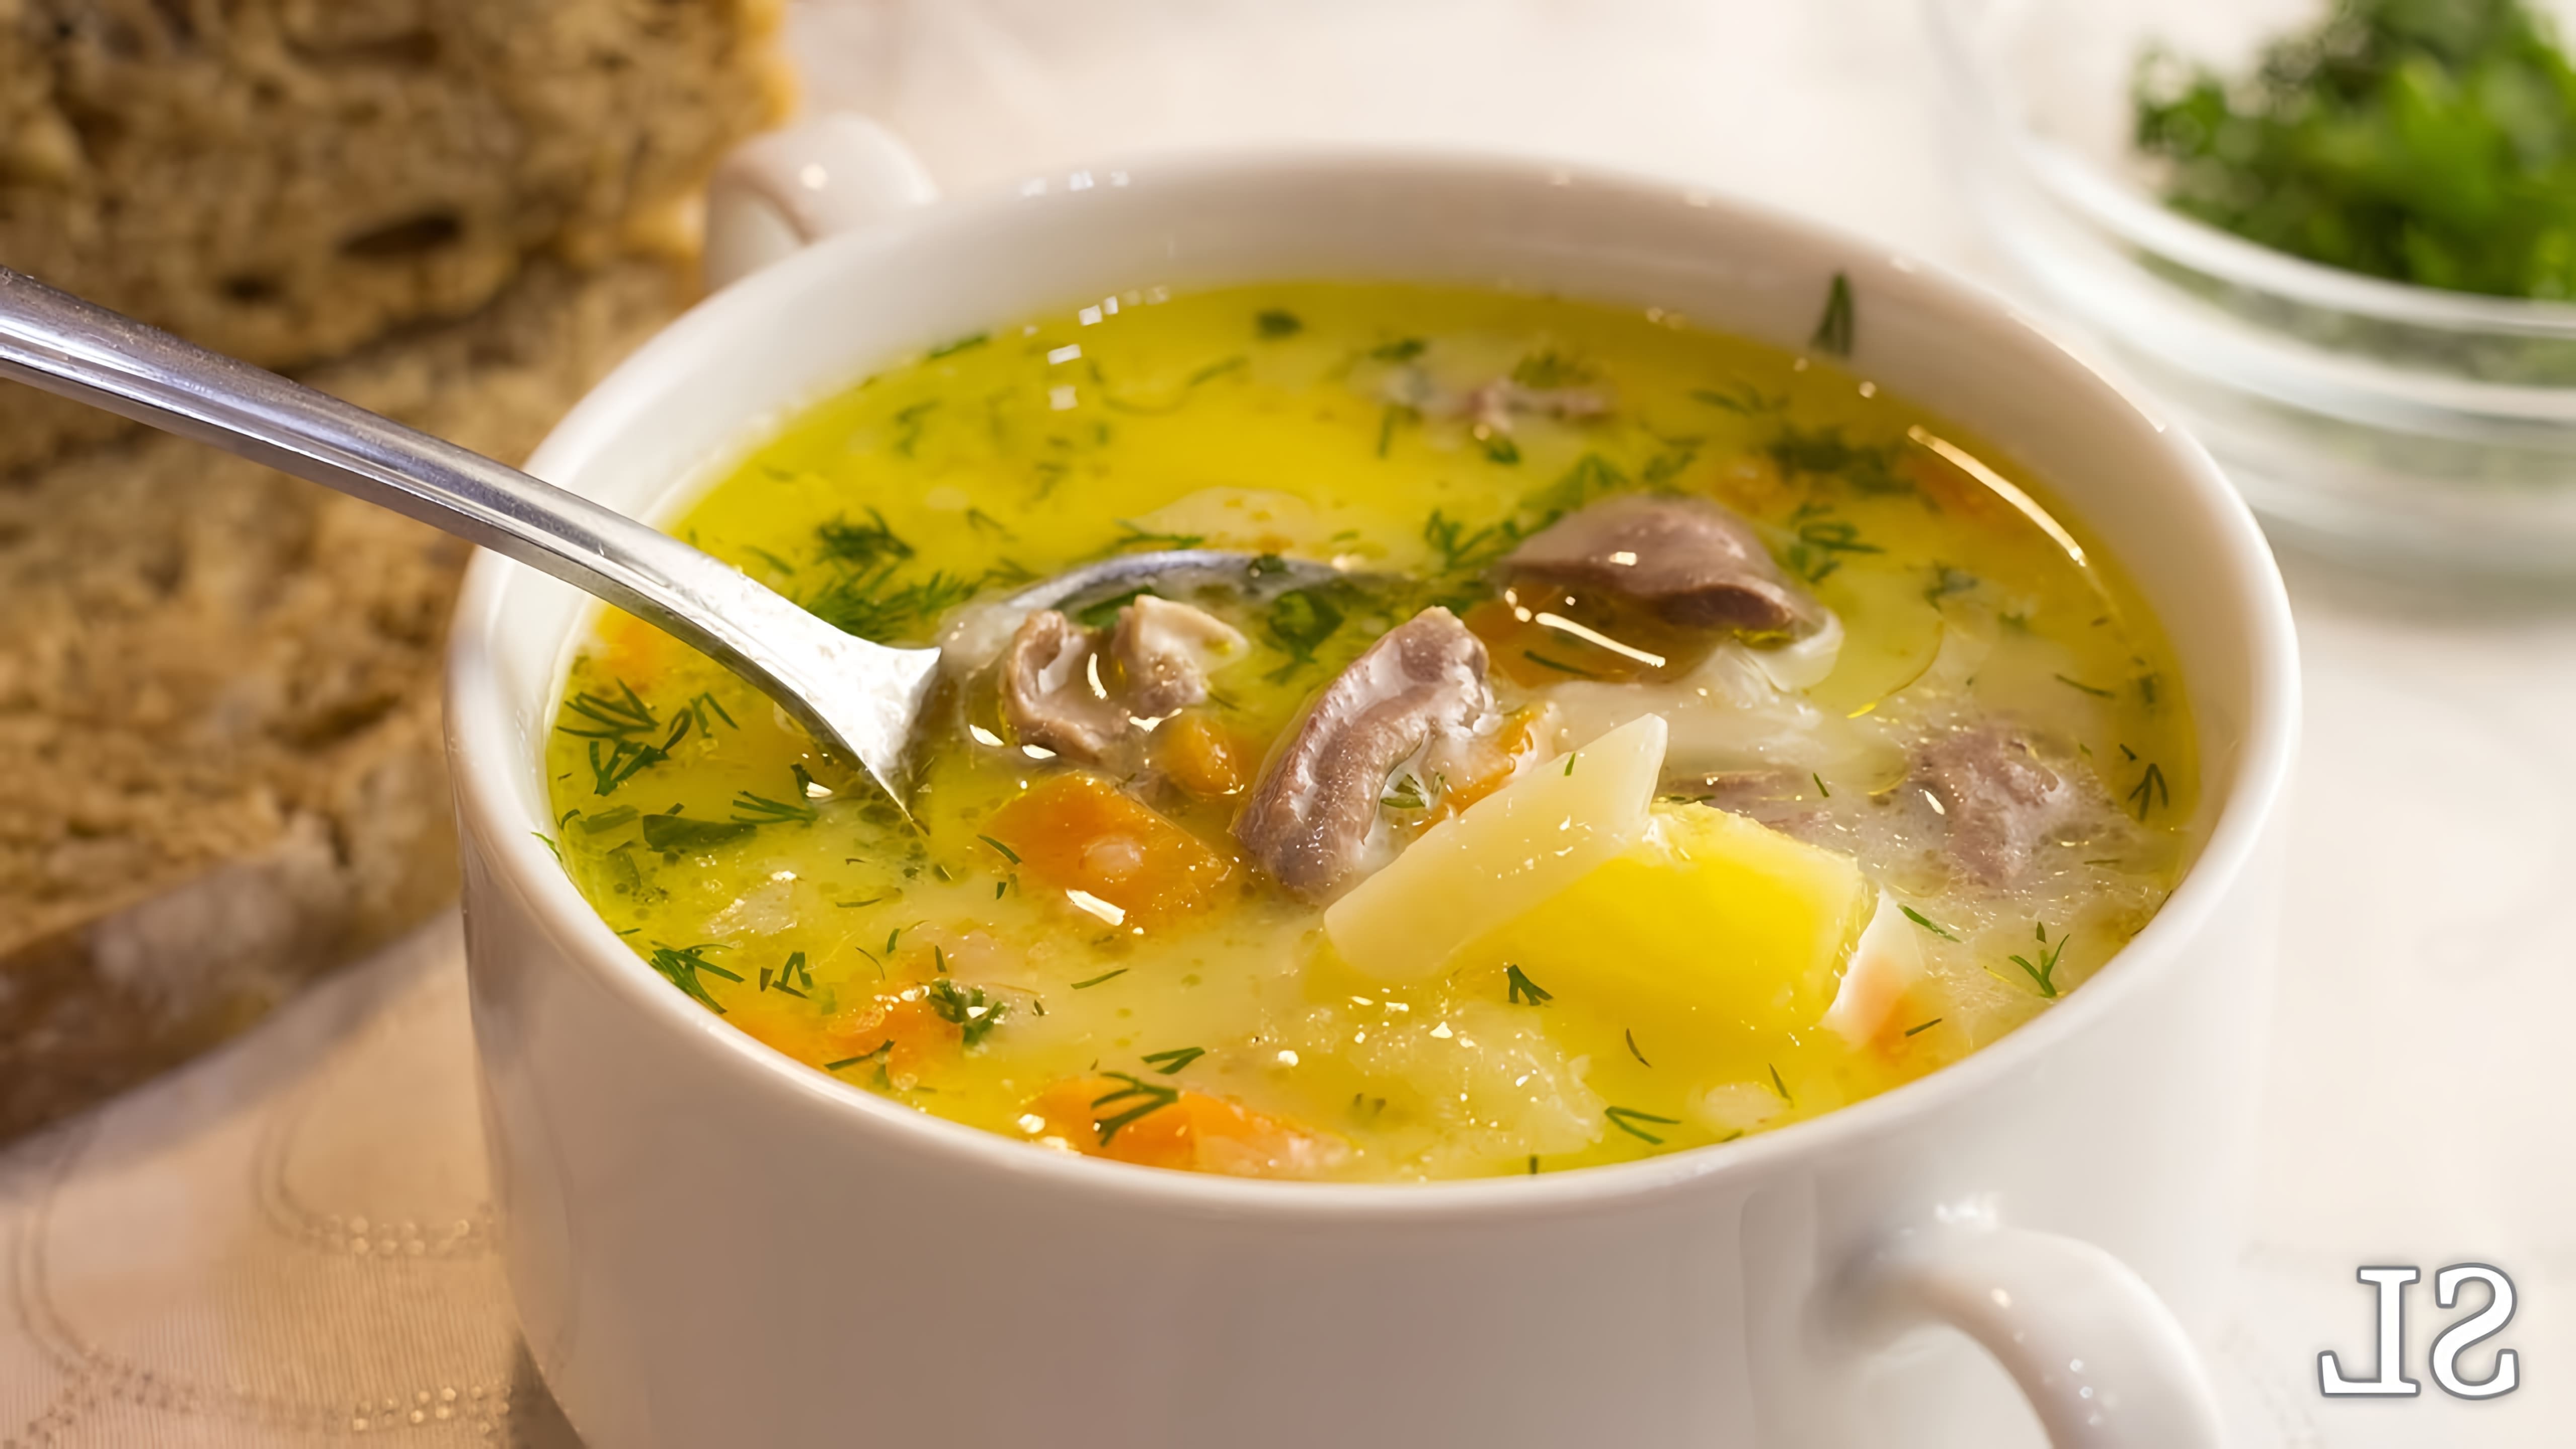 В этом видео демонстрируется рецепт приготовления бесподобного сырного супа с куриными сердечками